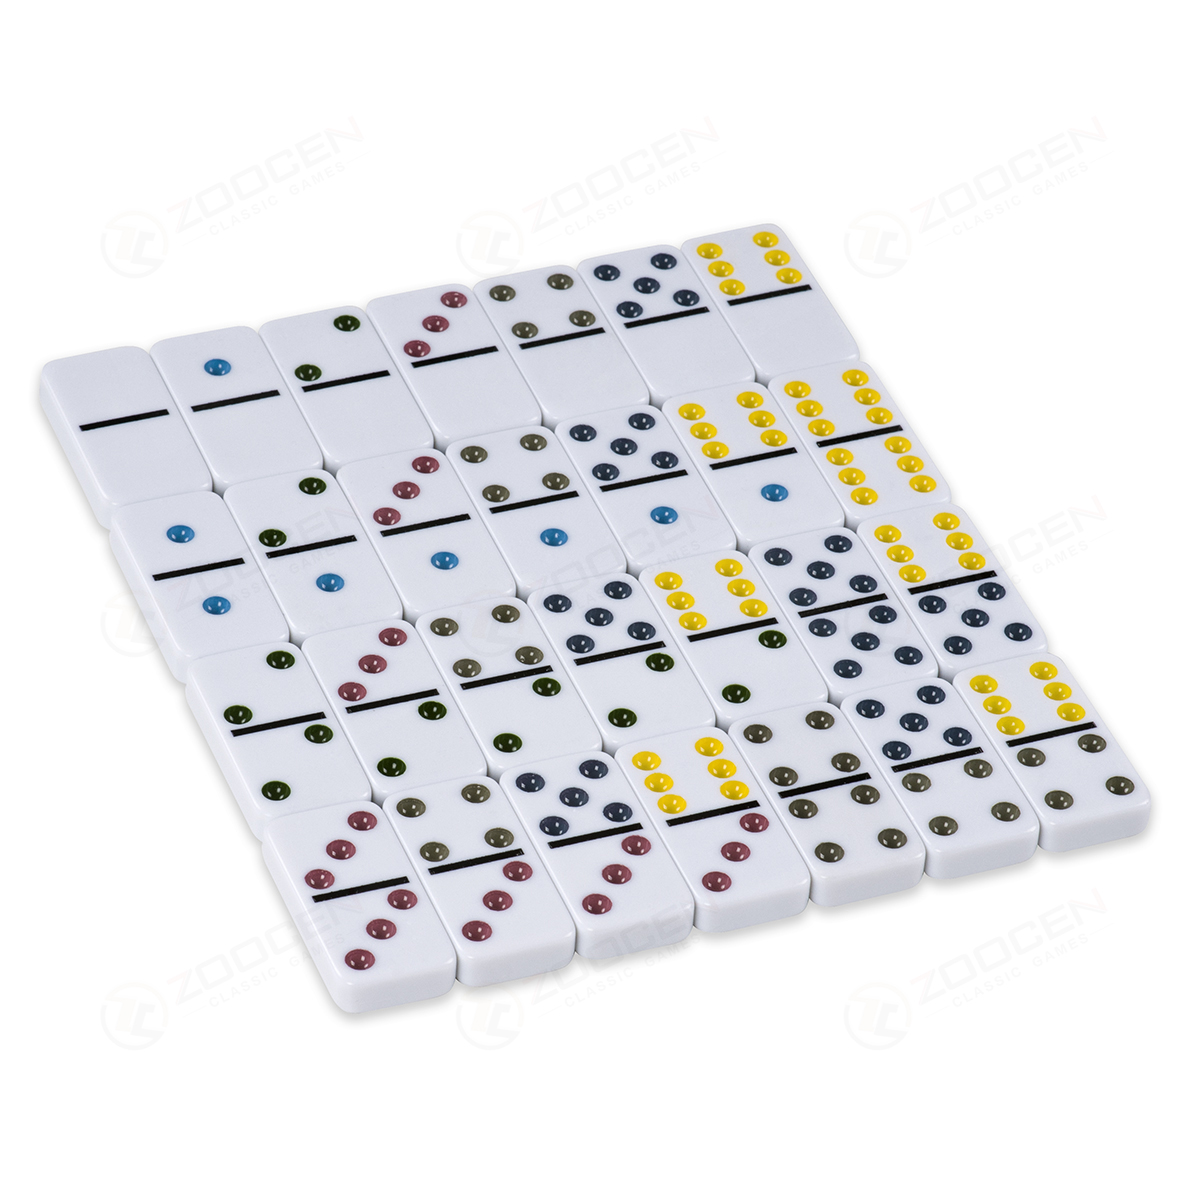 硬纸盒包装双六白彩多米诺套装 Double 6 Color Dot Dominoes Set详情1